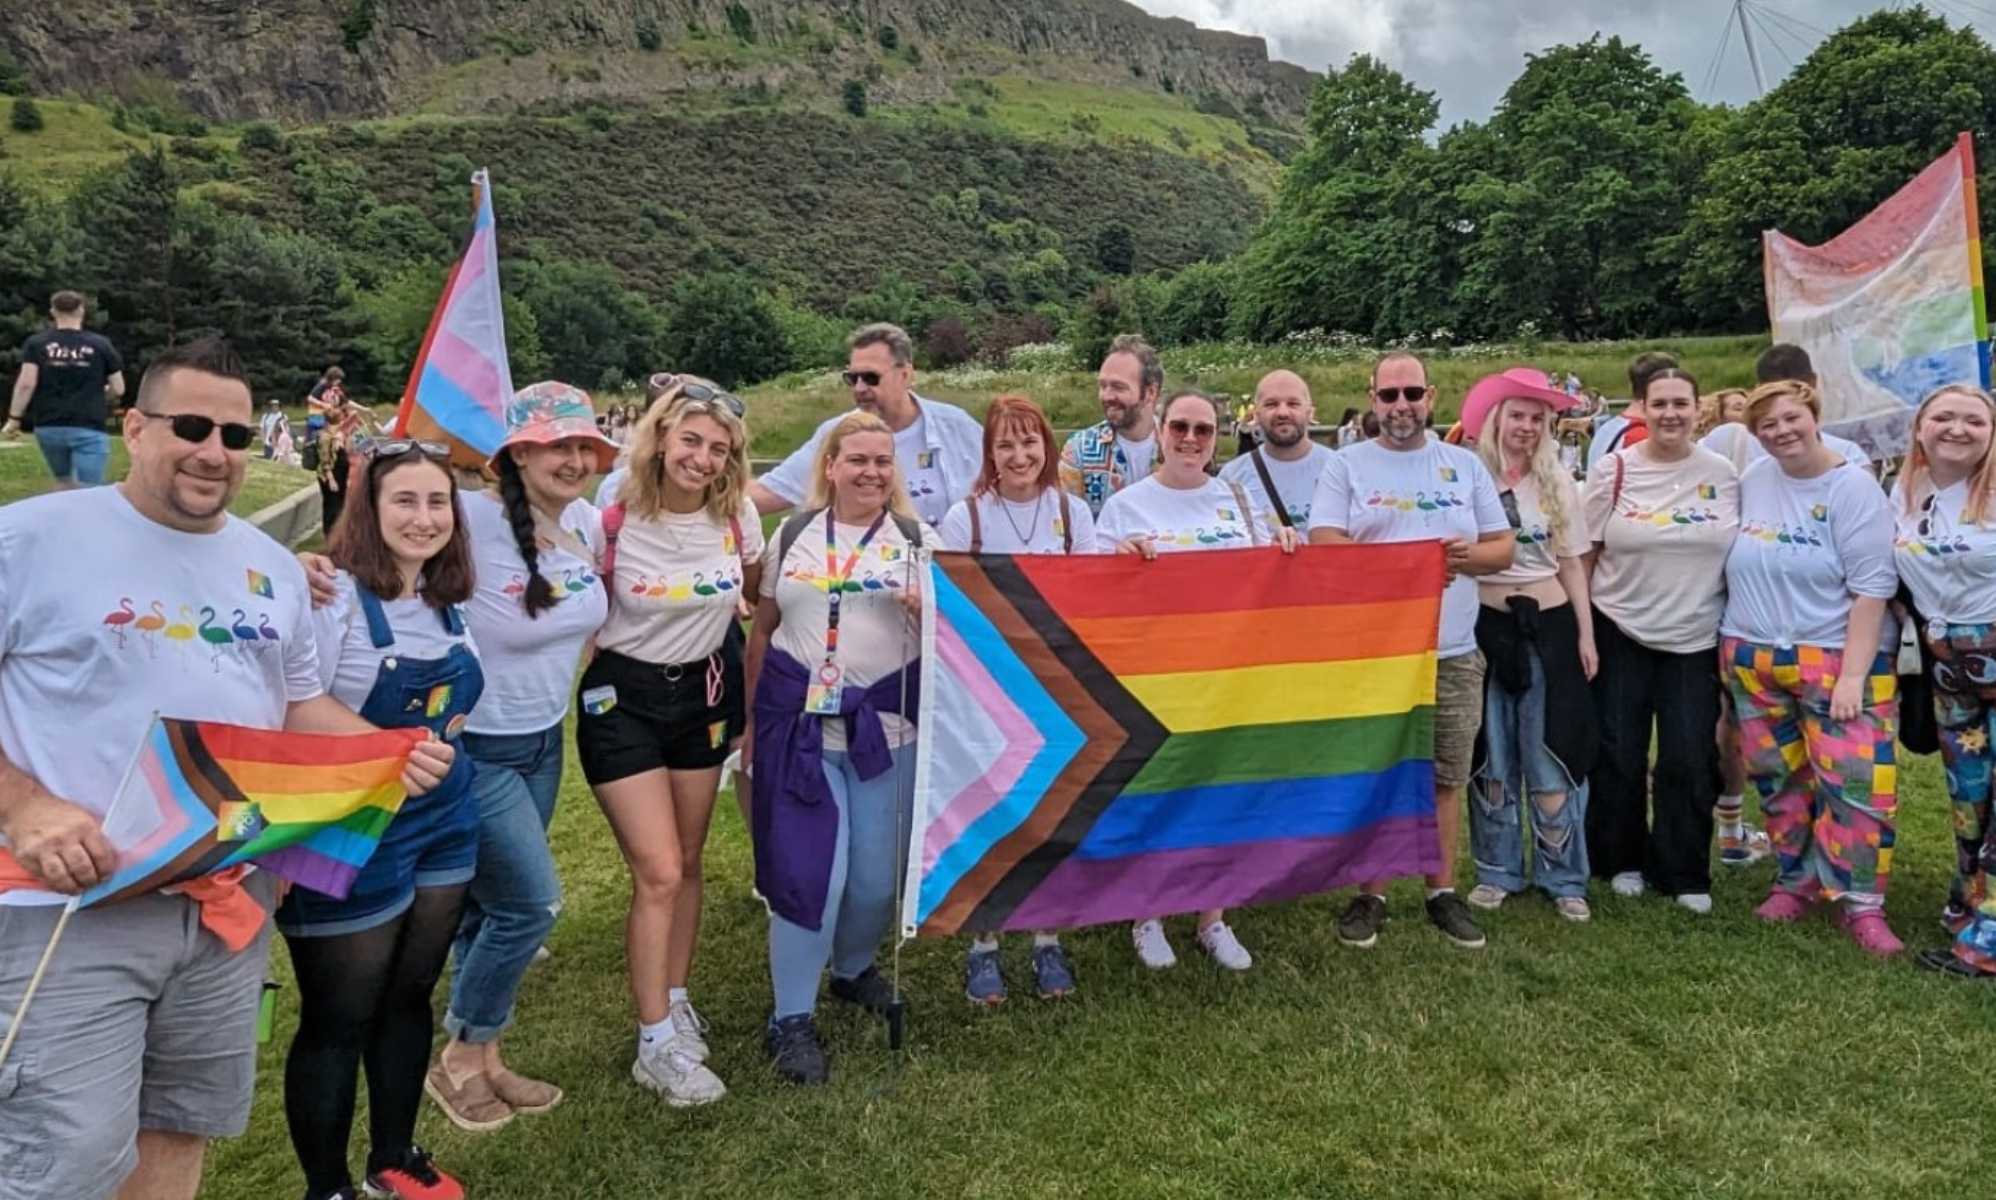 El zoo de Edimburgo, elogiado por su respuesta a la reacción homófoba por celebrar el Orgullo